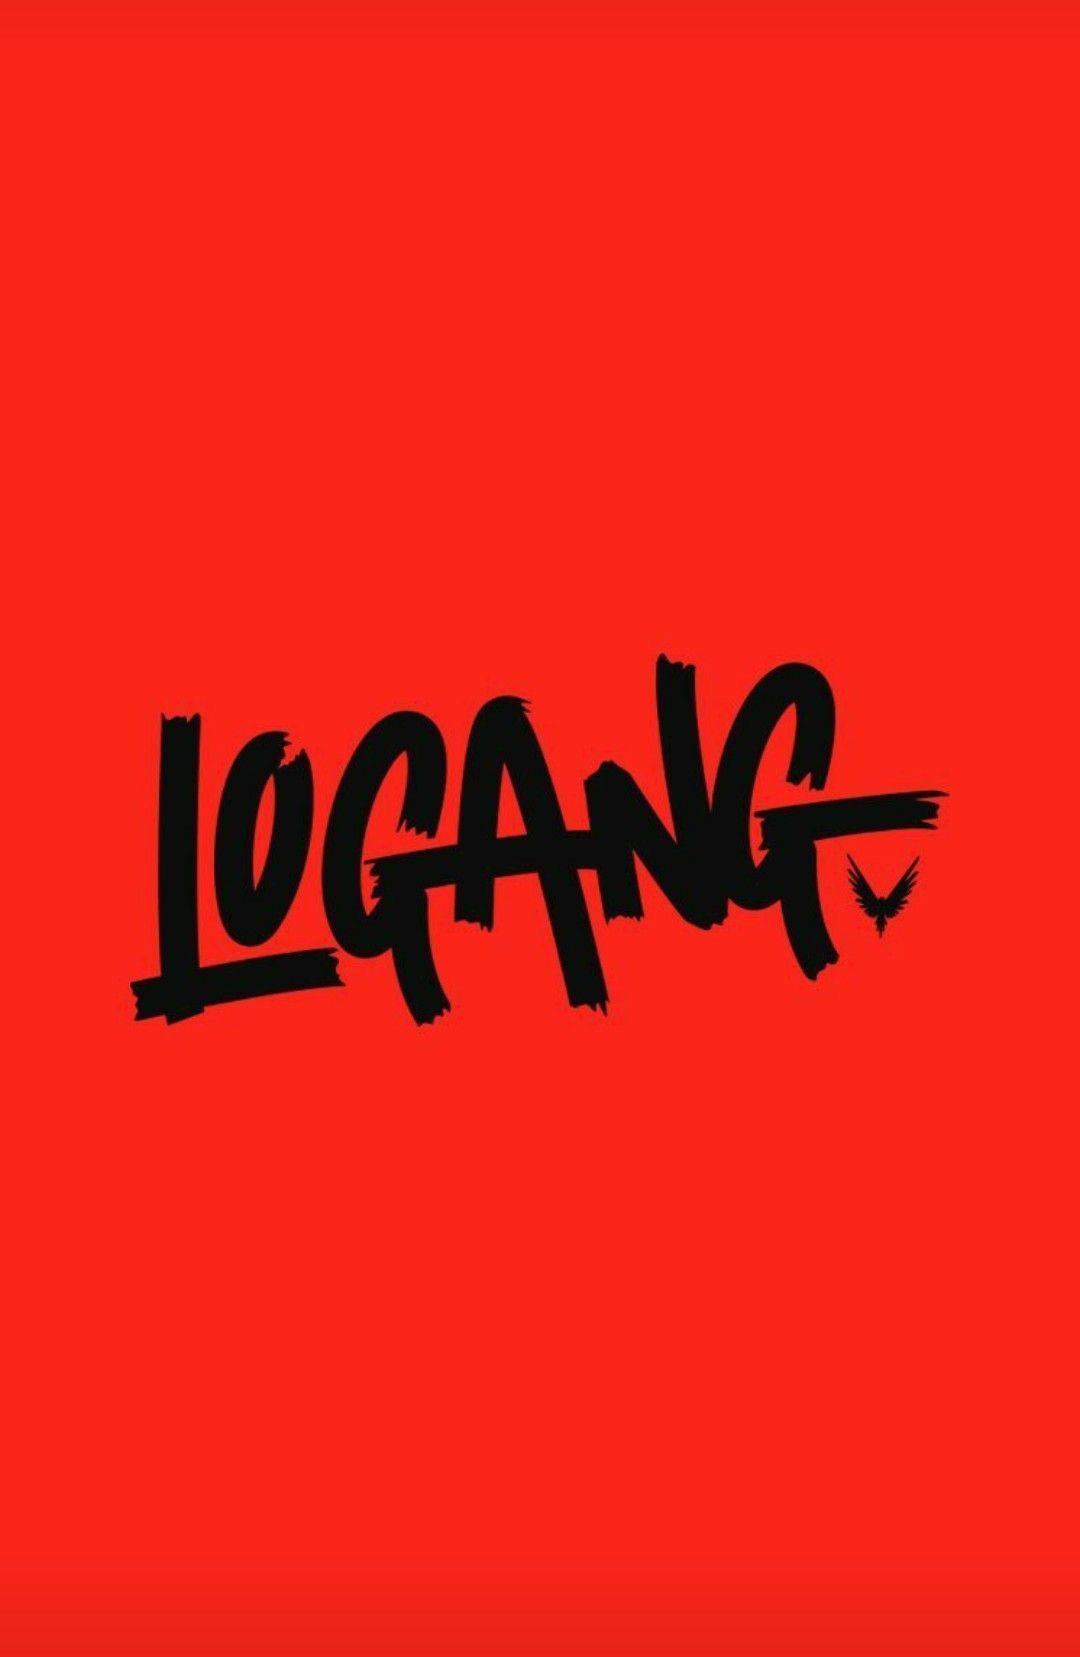 Logan Paul Savage Logo - Logan Paul Wallpapers - Wallpaper Cave